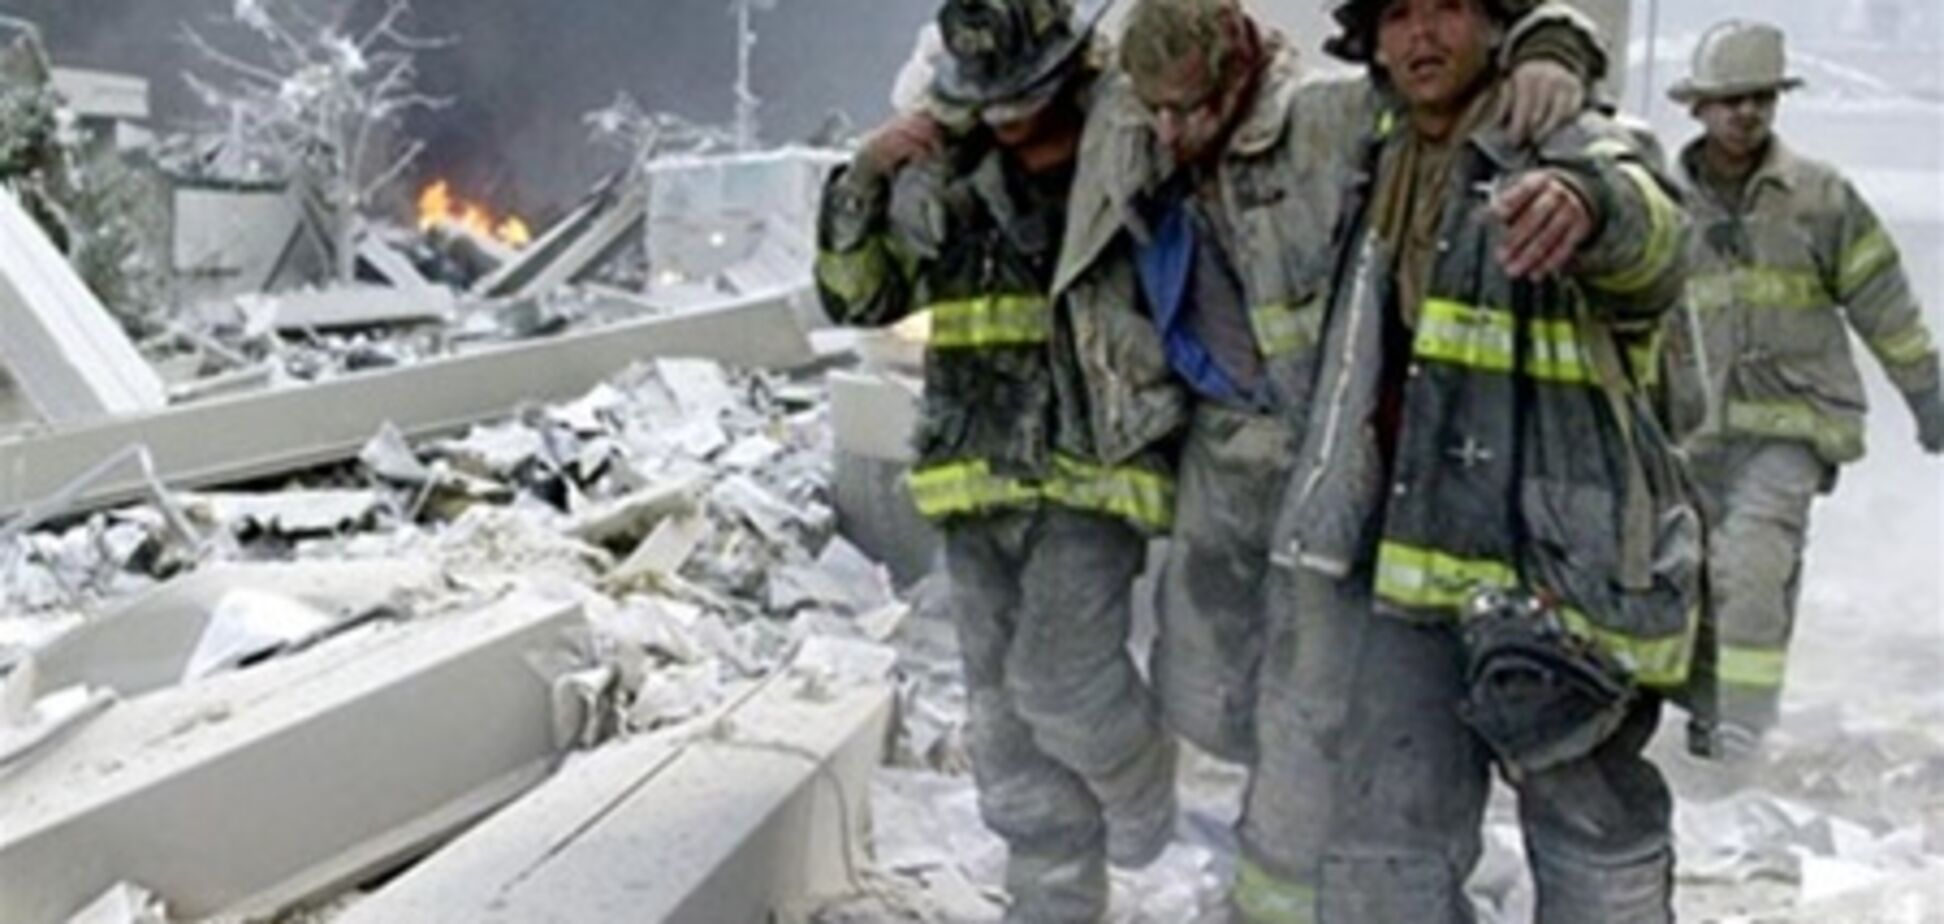 На месте теракта 9/11 в Нью-Йорке нашли крыло самолета